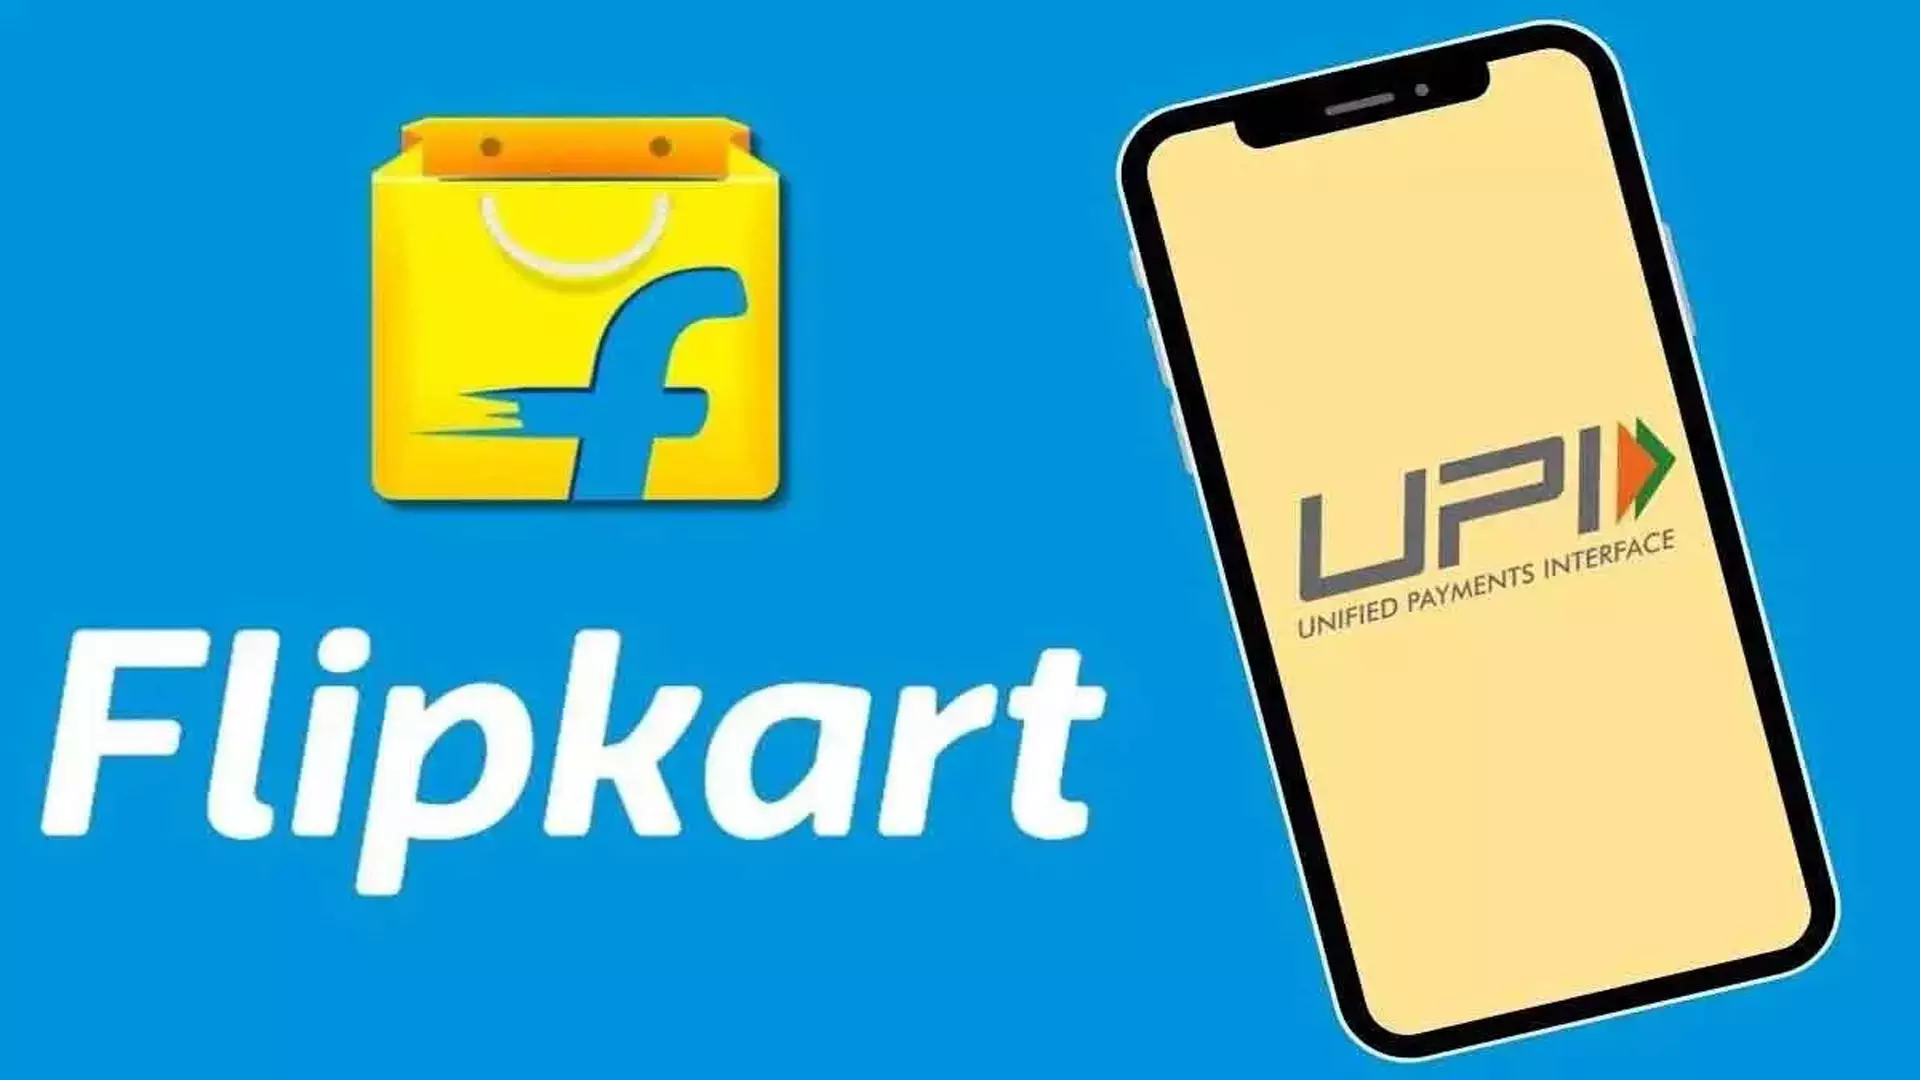 Flipkart ने अपना खुद का पेमेंट ऐप सुपर.मनी लॉन्च किया